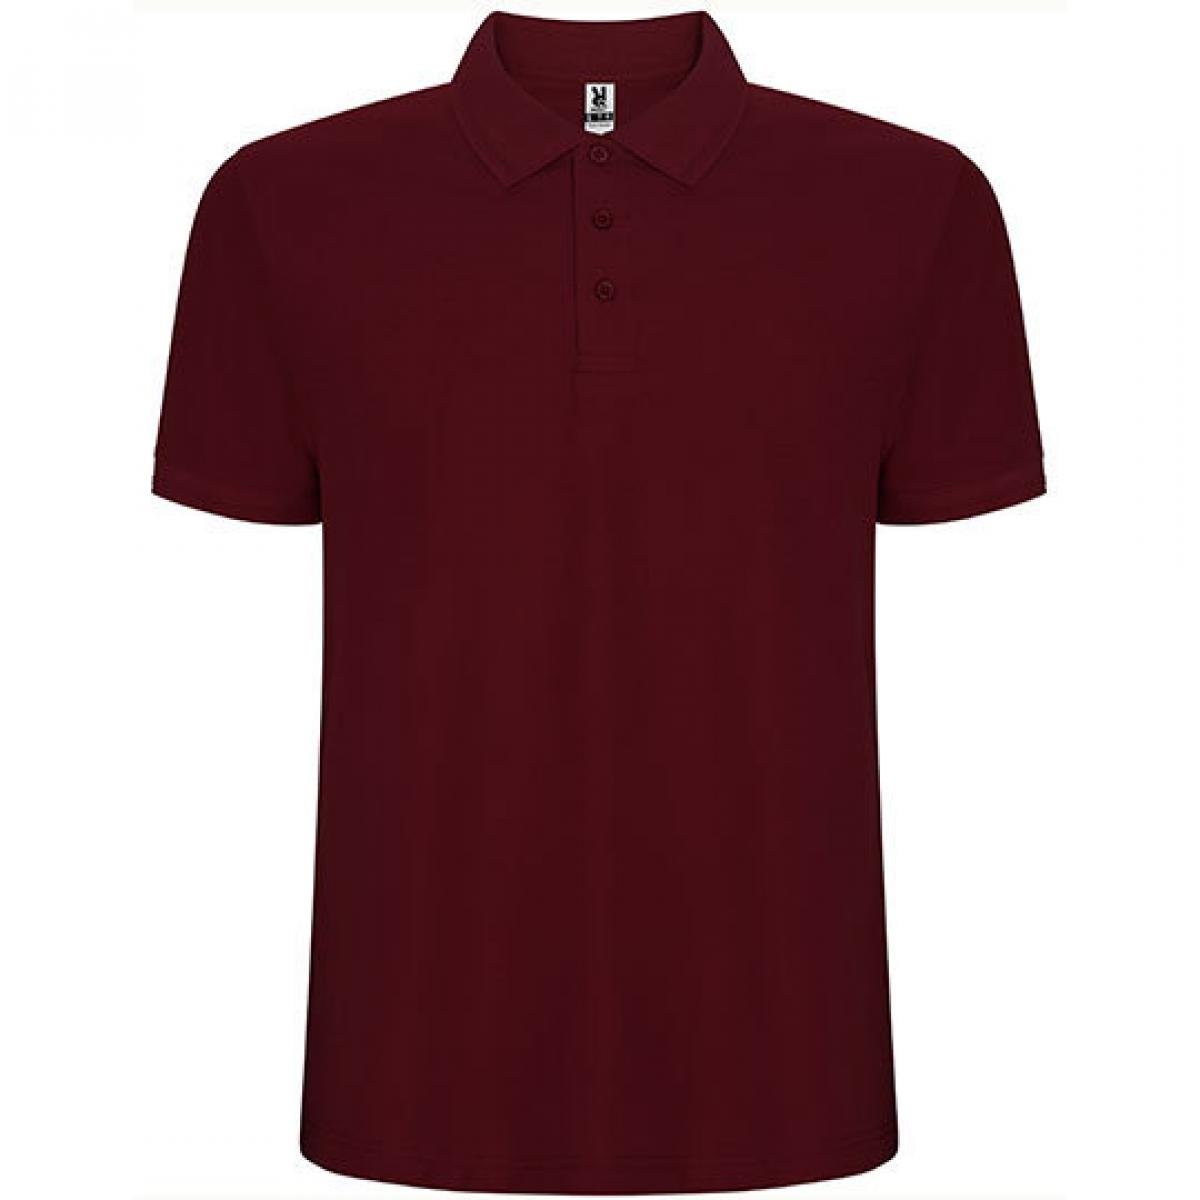 Hersteller: Roly Herstellernummer: PO6609 Artikelbezeichnung: Pegaso Premium Poloshirt - Piqué Farbe: Garnet Red 57